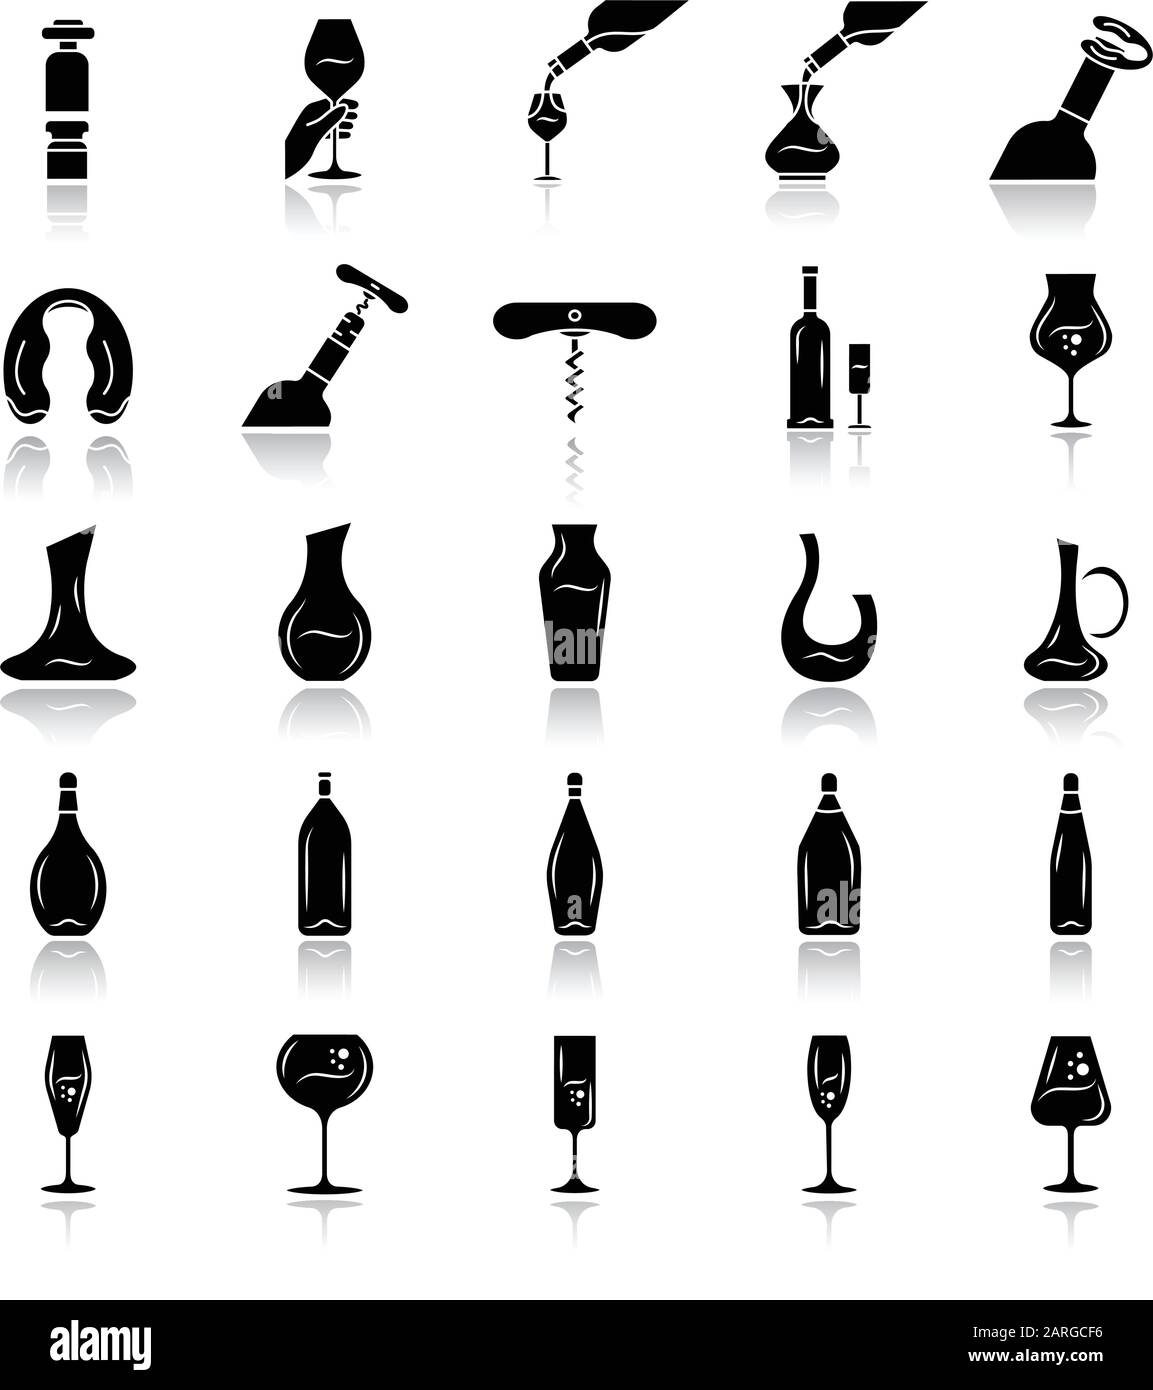 Vino e Wineglasses goccia ombra glyph nero icone set. Diversi tipi di vetreria e bevande alcoliche. Decanter, bottiglie, utensili da barman. Aperitivo Illustrazione Vettoriale